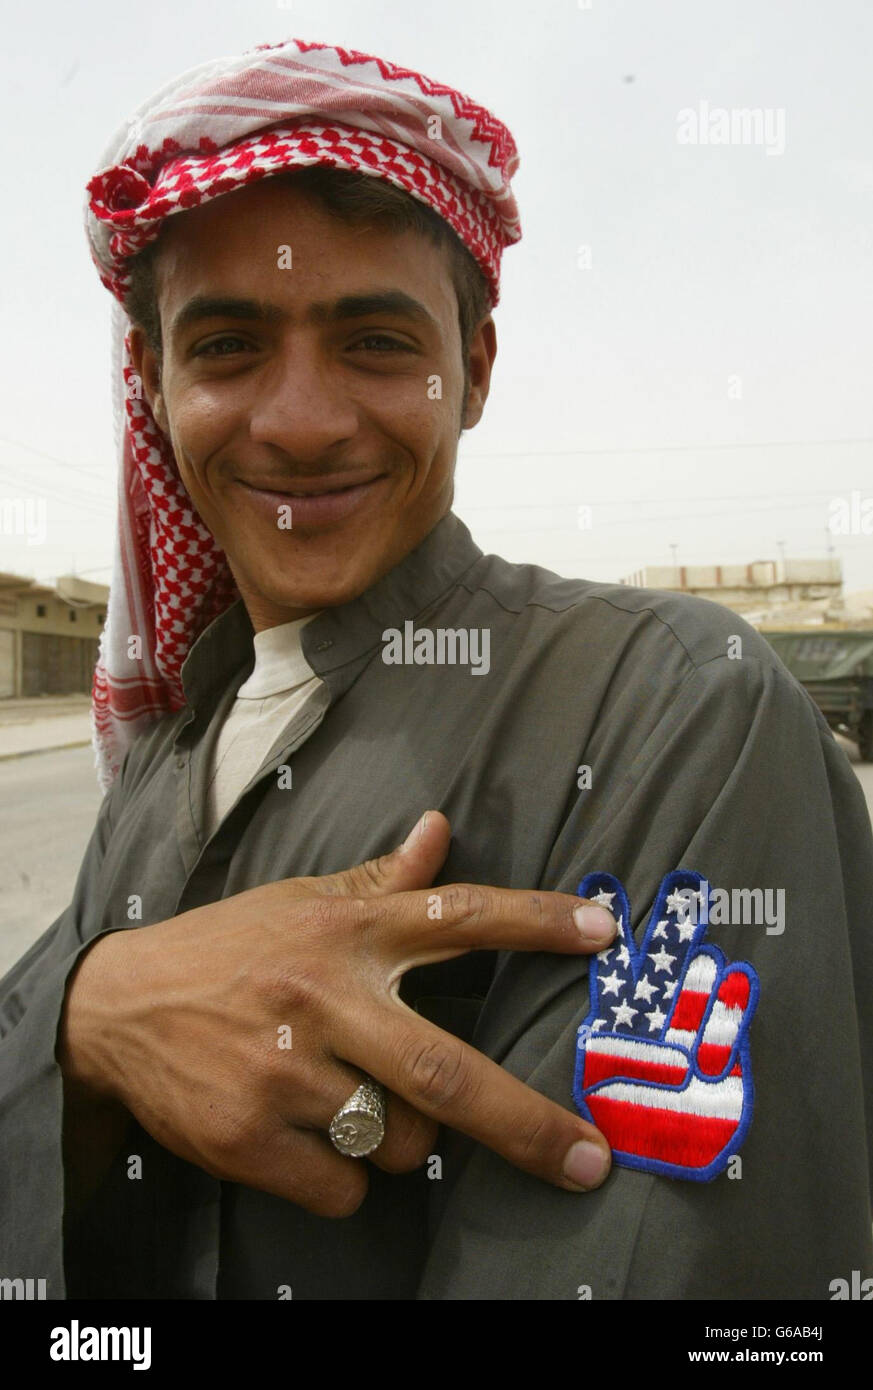 Un ragazzo mostra con orgoglio il suo distintivo con la bandiera degli Stati Uniti su di esso come la pattuglia reggimento dell'aeronautica reale britannica nella città irachena meridionale di Safwan. Le forze britanniche stanno aiutando la popolazione locale con aiuti umanitari. Foto Stock